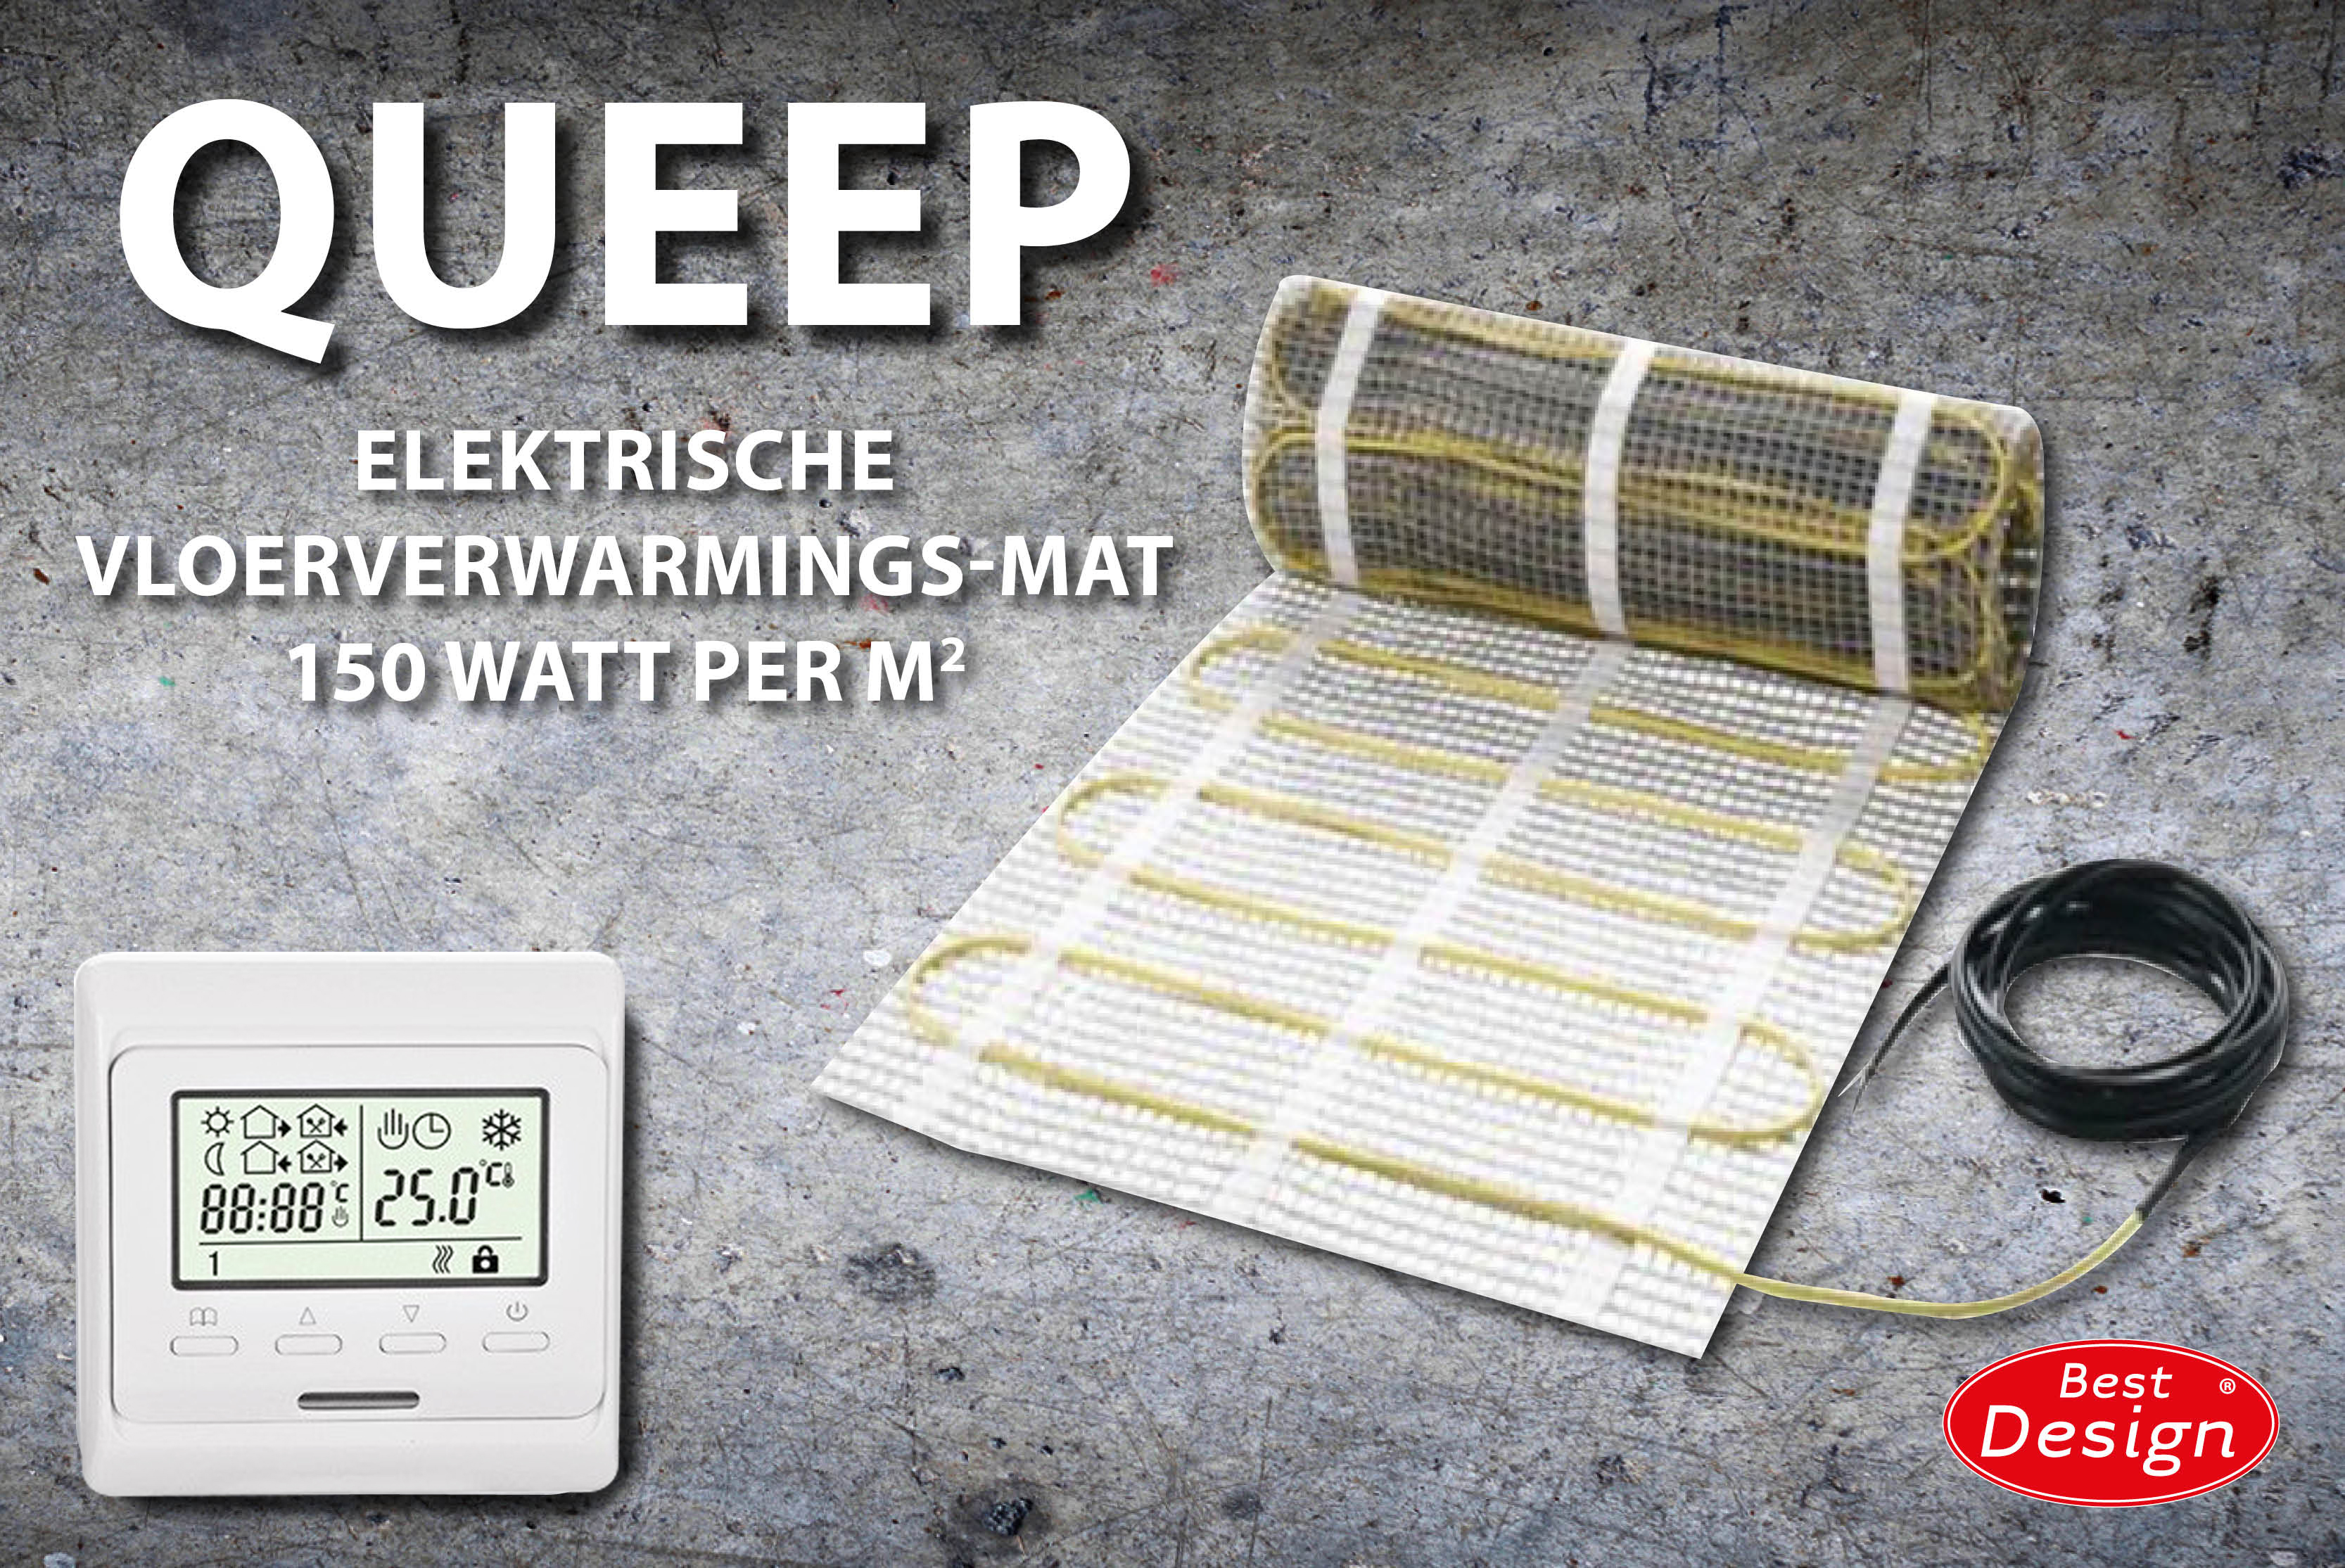 Best-Design Queep elektrische vloerverwarmings-mat 1.5 m2 Top Merken Winkel